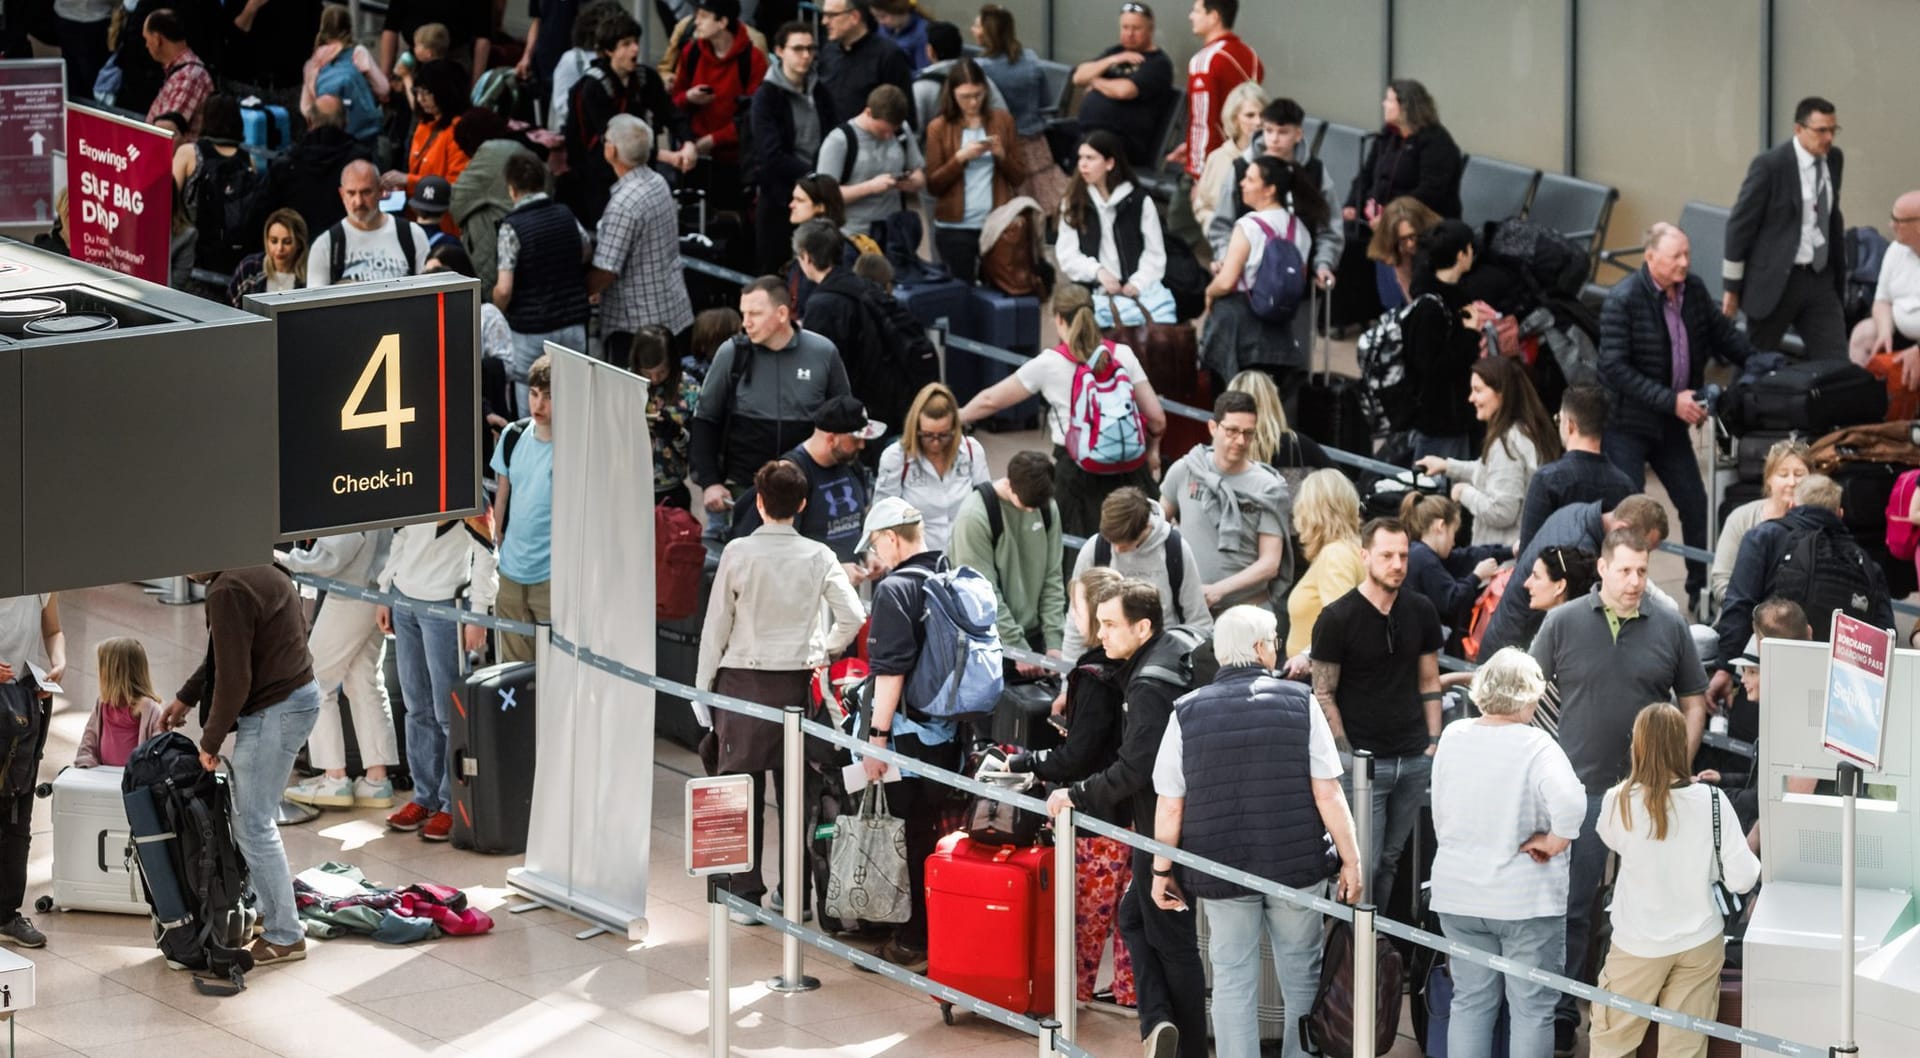 Menschen stehen im Flughafen vor dem Security-Check in einer langen Schlange.